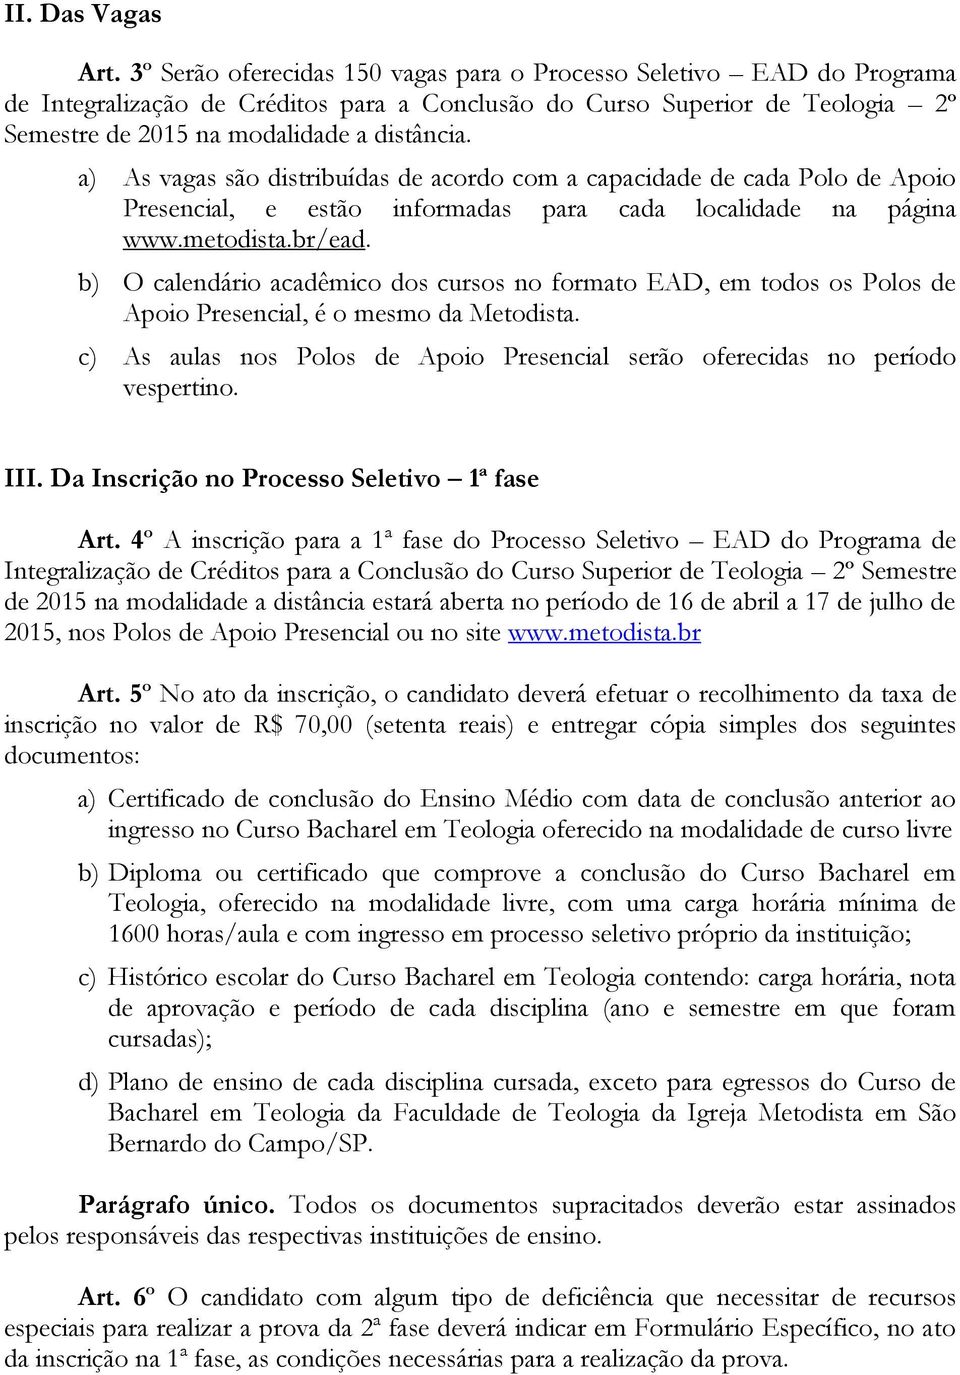 a) As vagas são distribuídas de acordo com a capacidade de cada Polo de Apoio Presencial, e estão informadas para cada localidade na página www.metodista.br/ead.